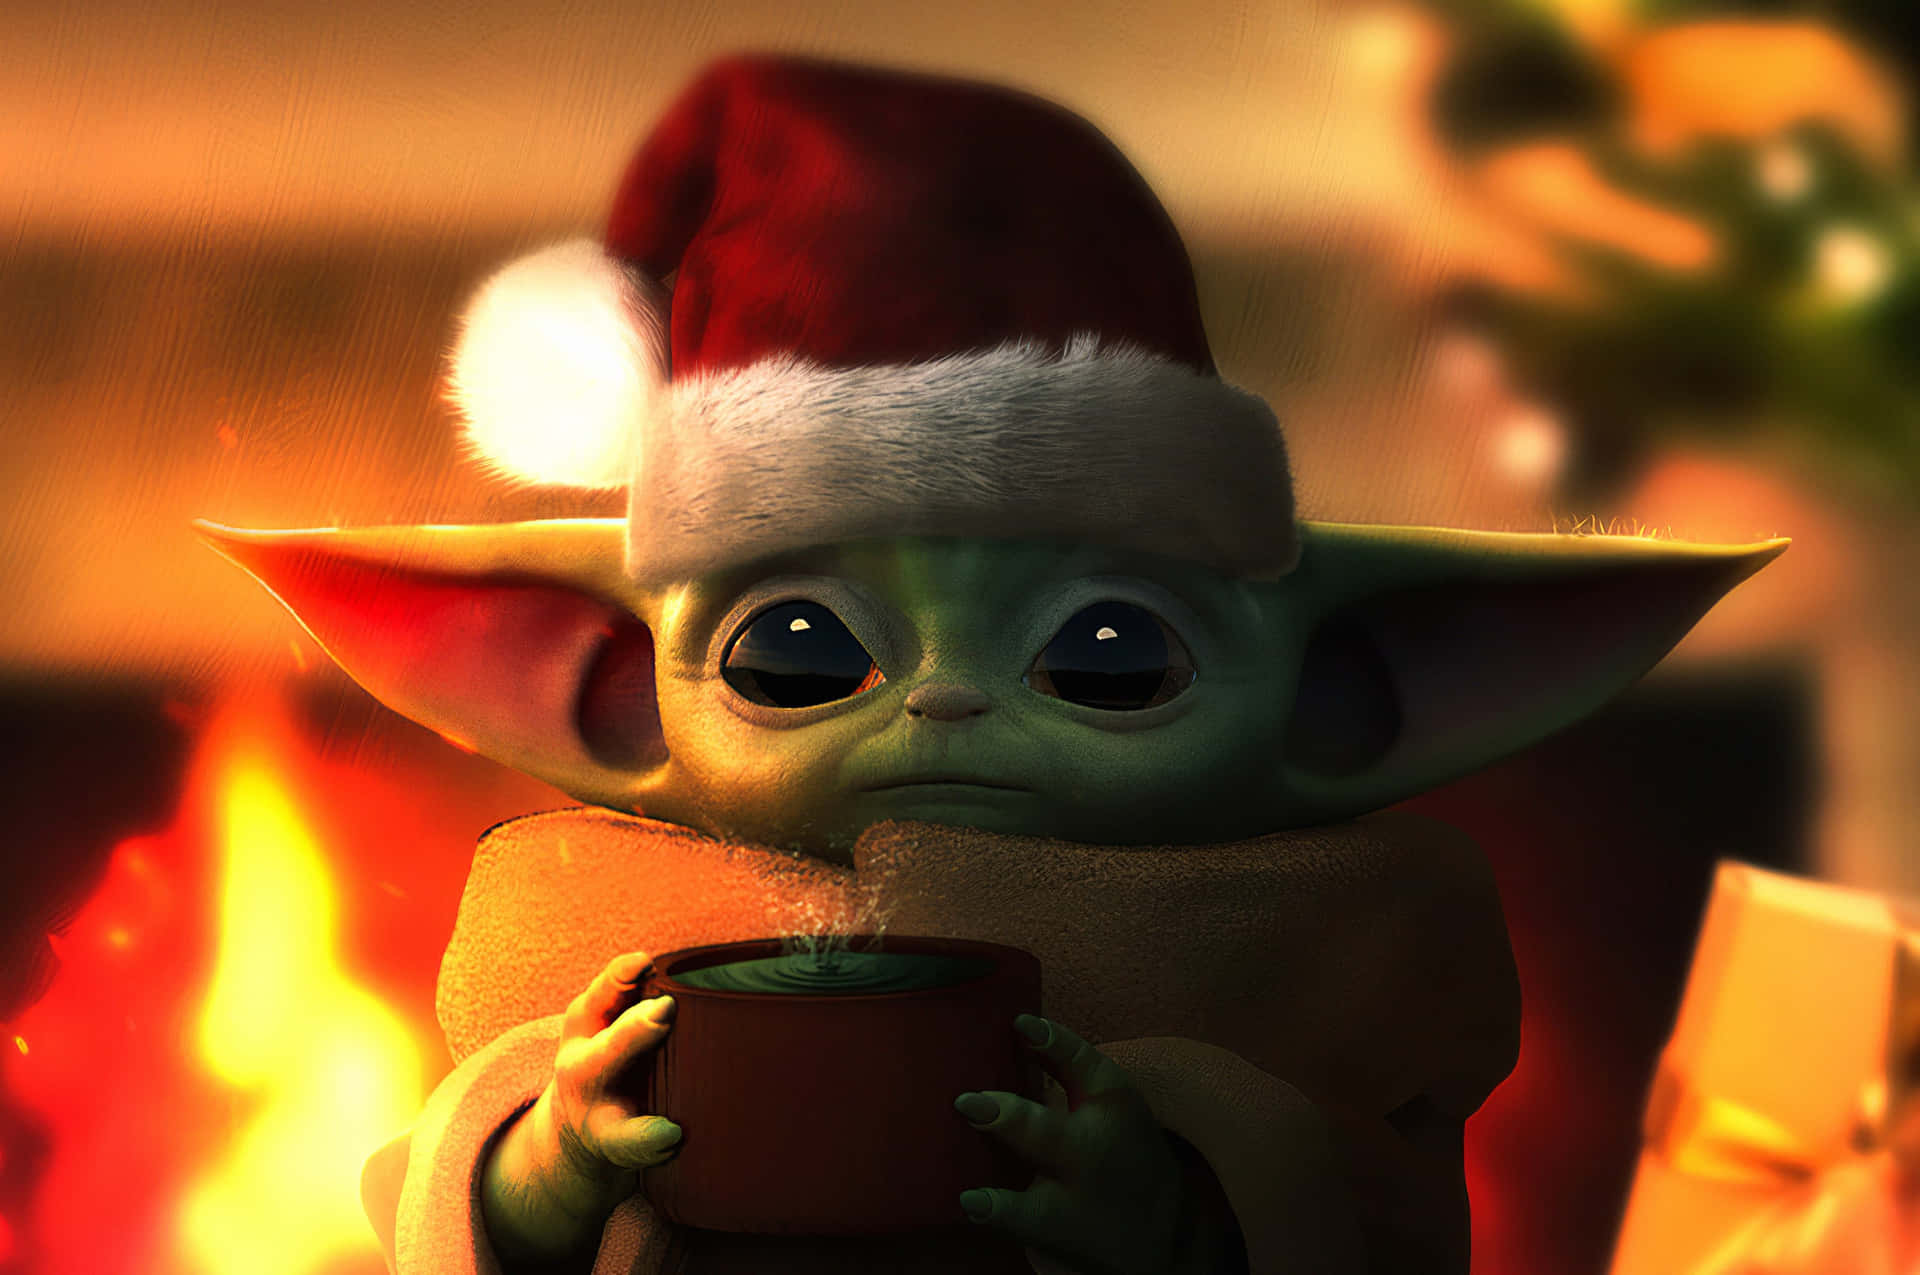 The adorable Baby Yoda